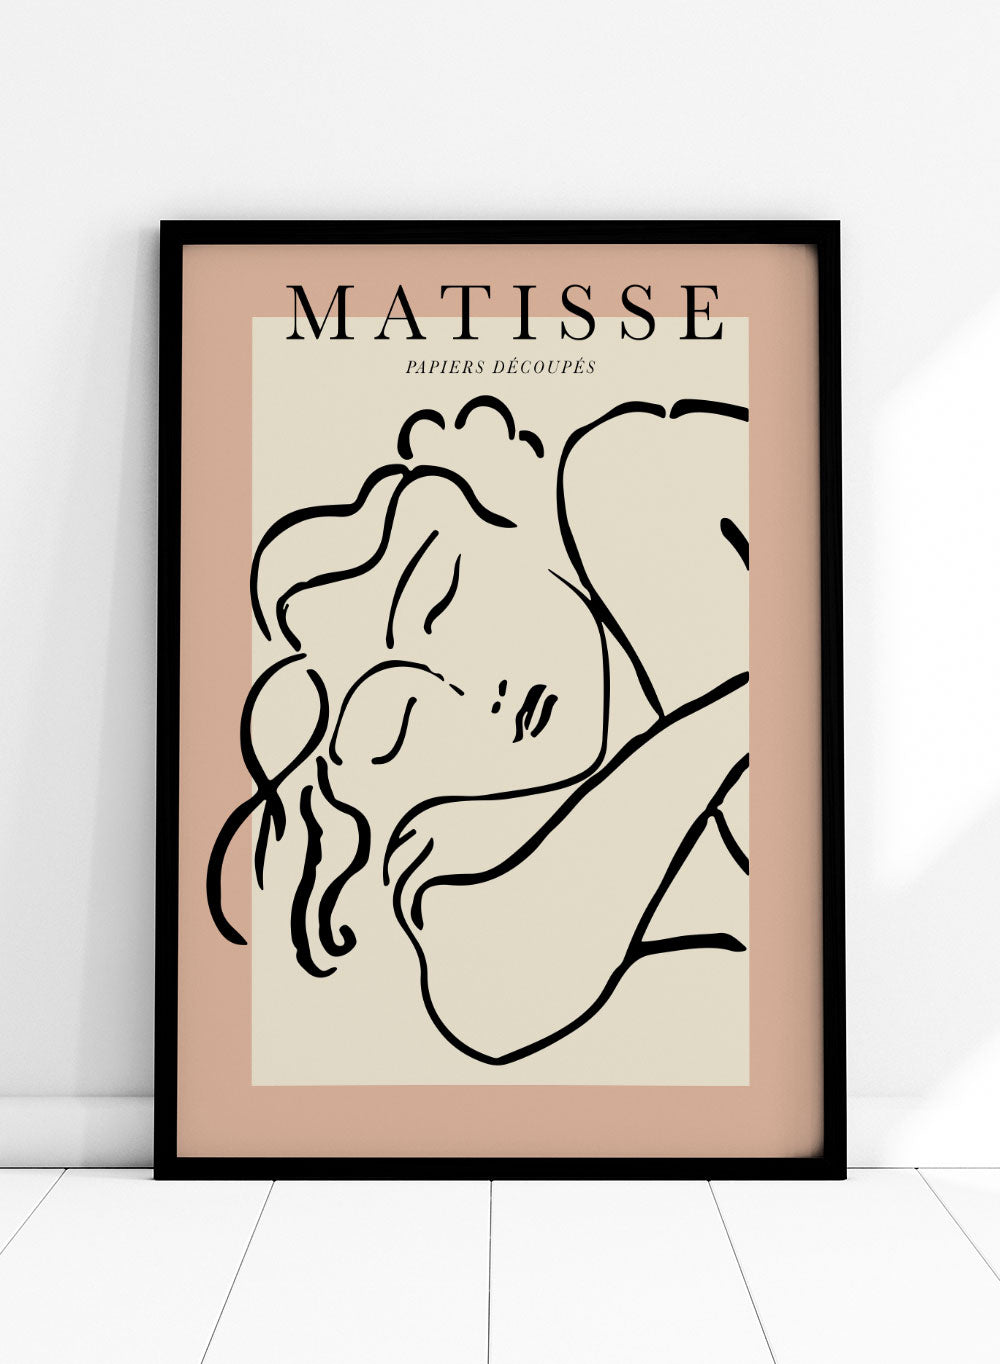 Sketch of Sleeping Woman by Henri Matisse